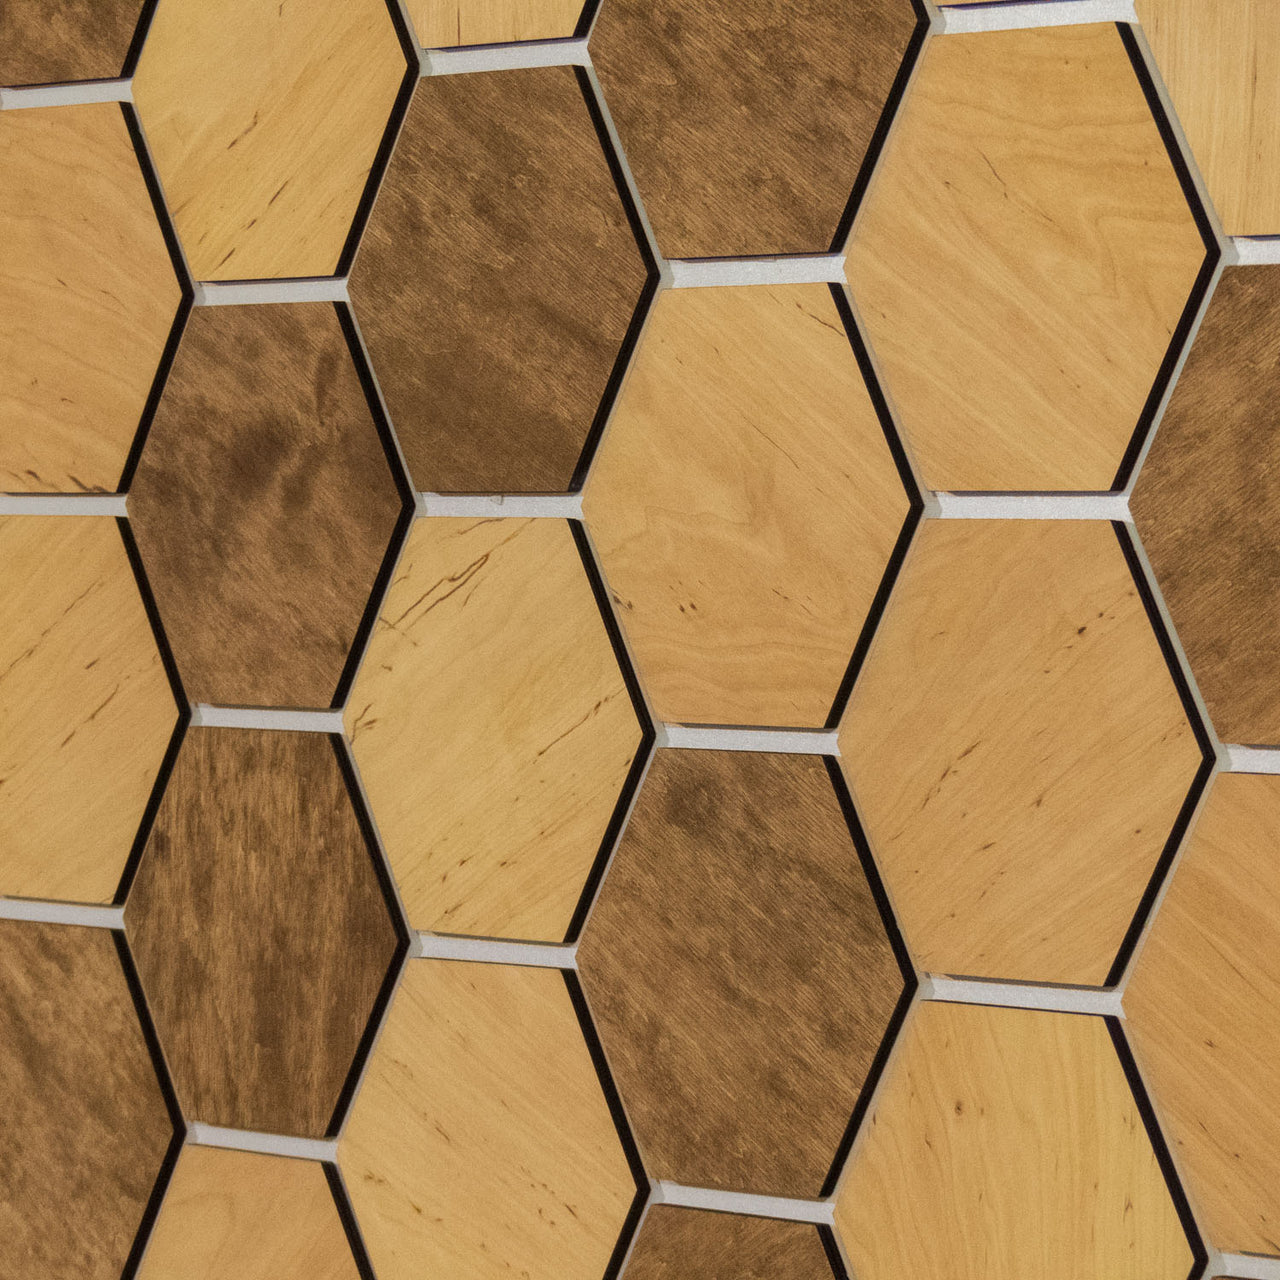 Hexagonal Wooden Wall Panels [32pcs] Alder Dark